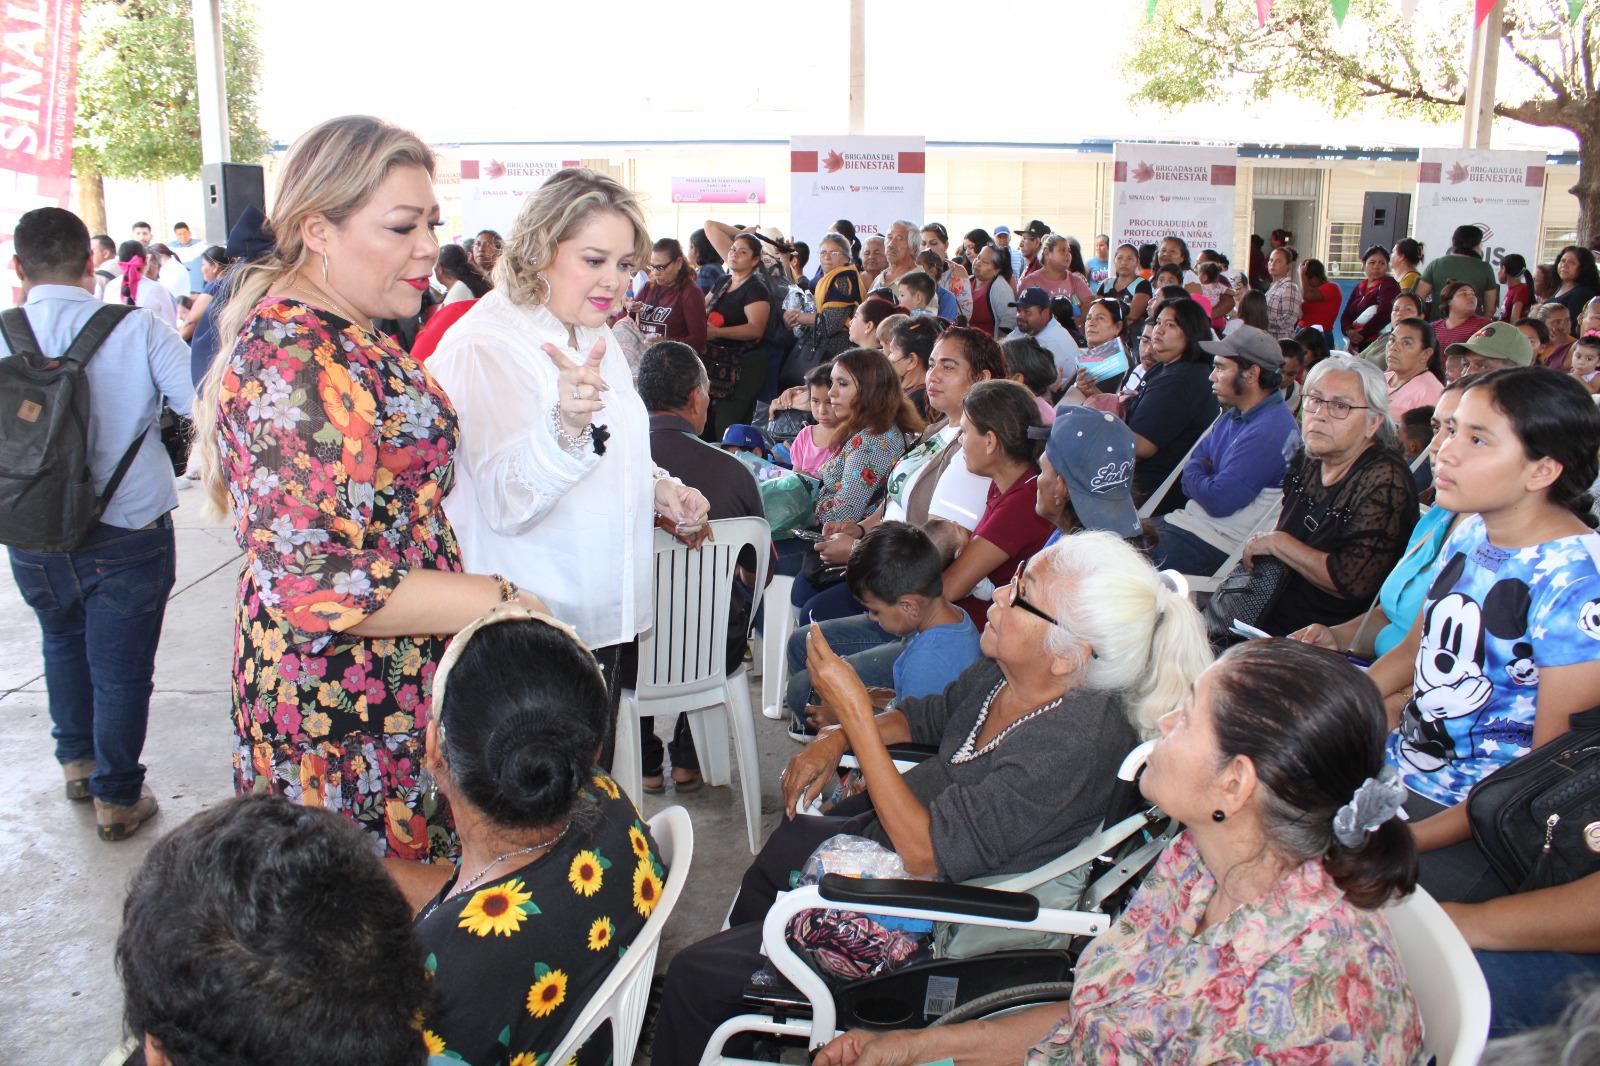 $!DIF Sinaloa realiza la Brigada del Bienestar en Rosario